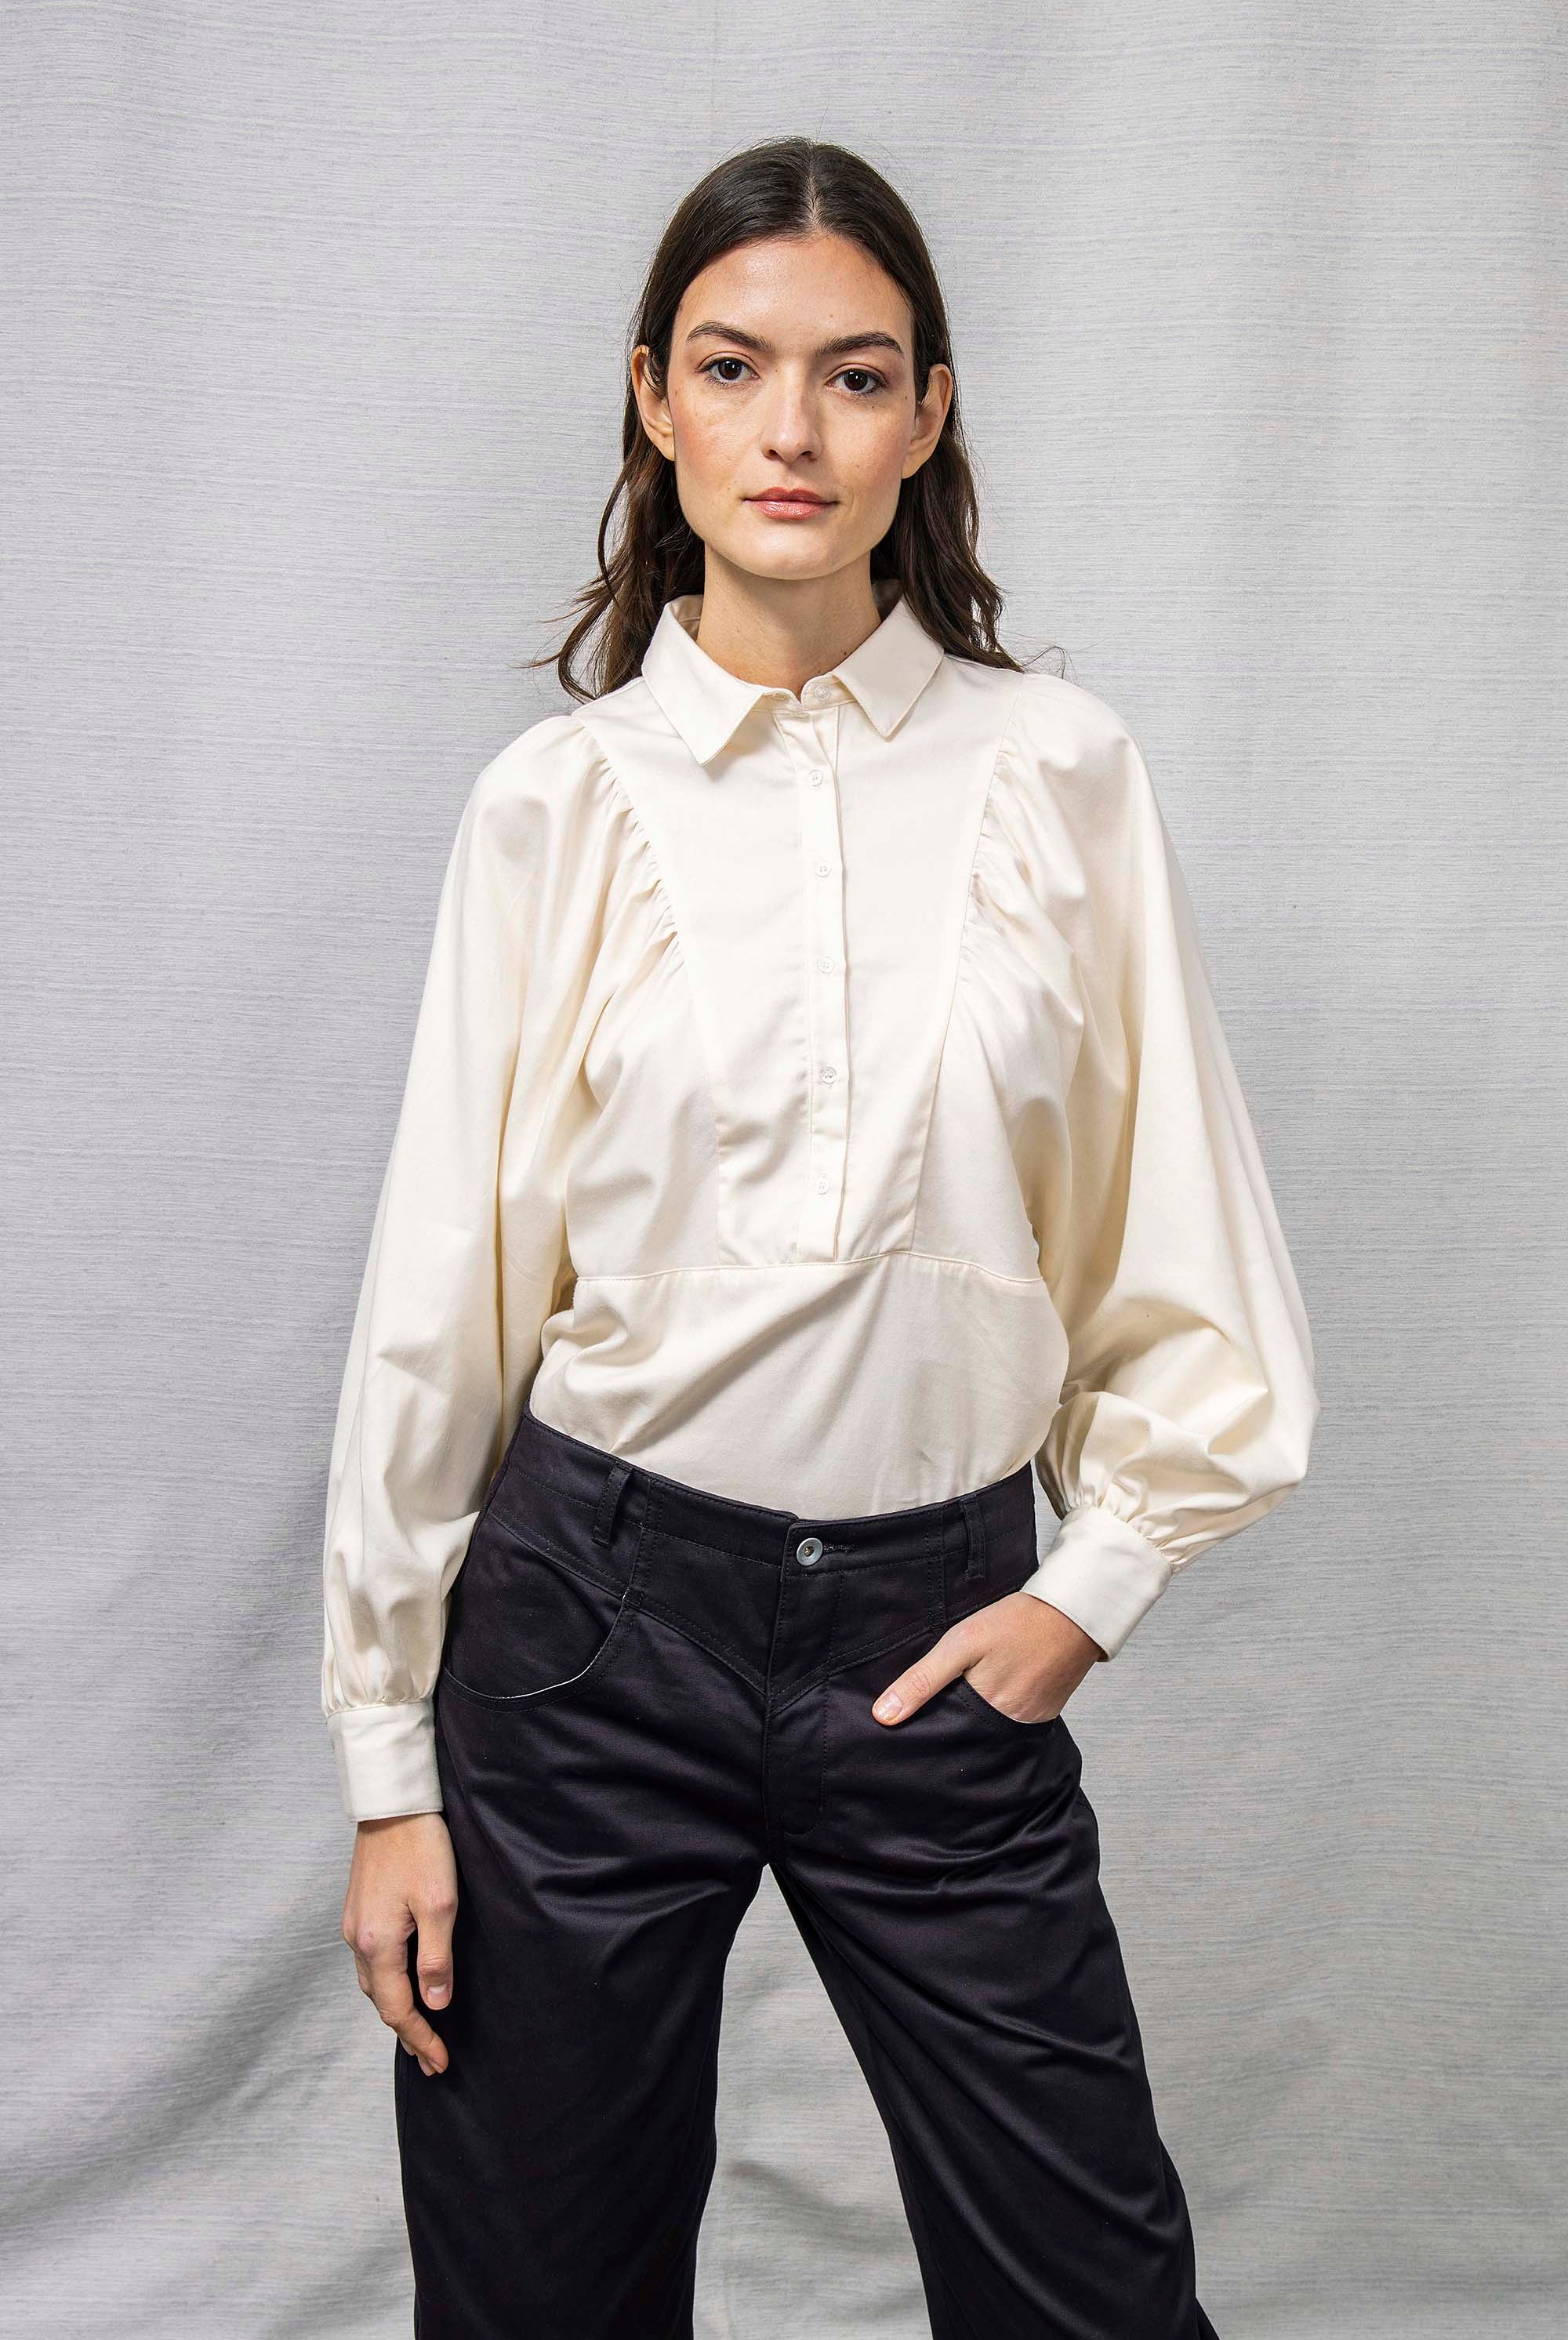 Chemise Carina Blanc Nacré classique intemporelle, la chemise dessine la silhouette